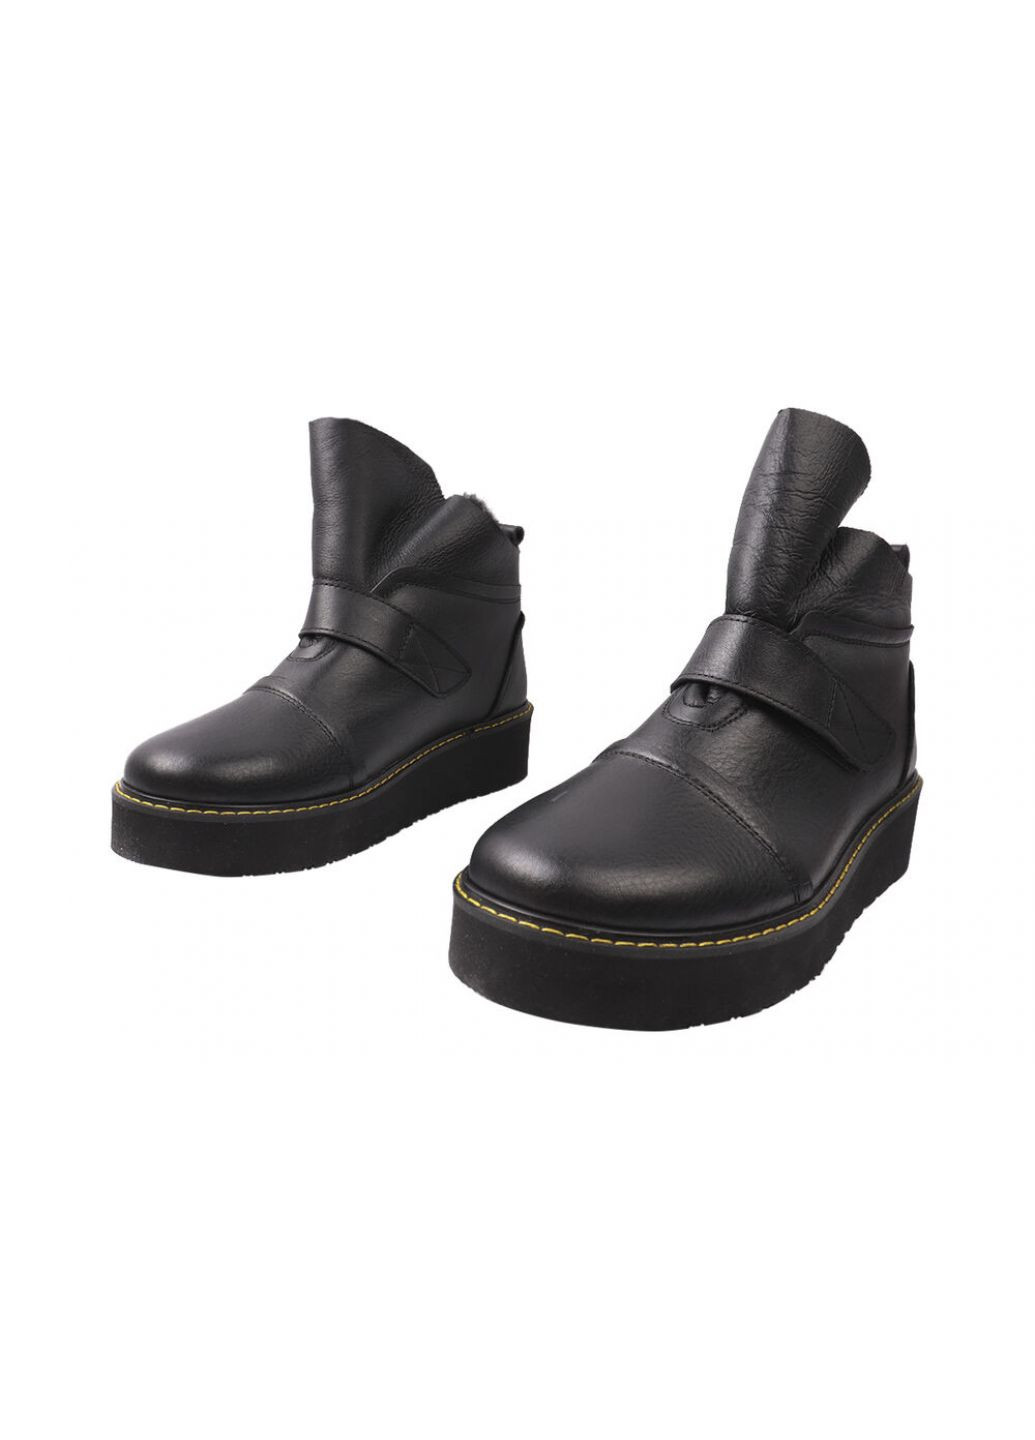 ботинки женские из натуральной кожи, на платформе, черные, украина Best Vak